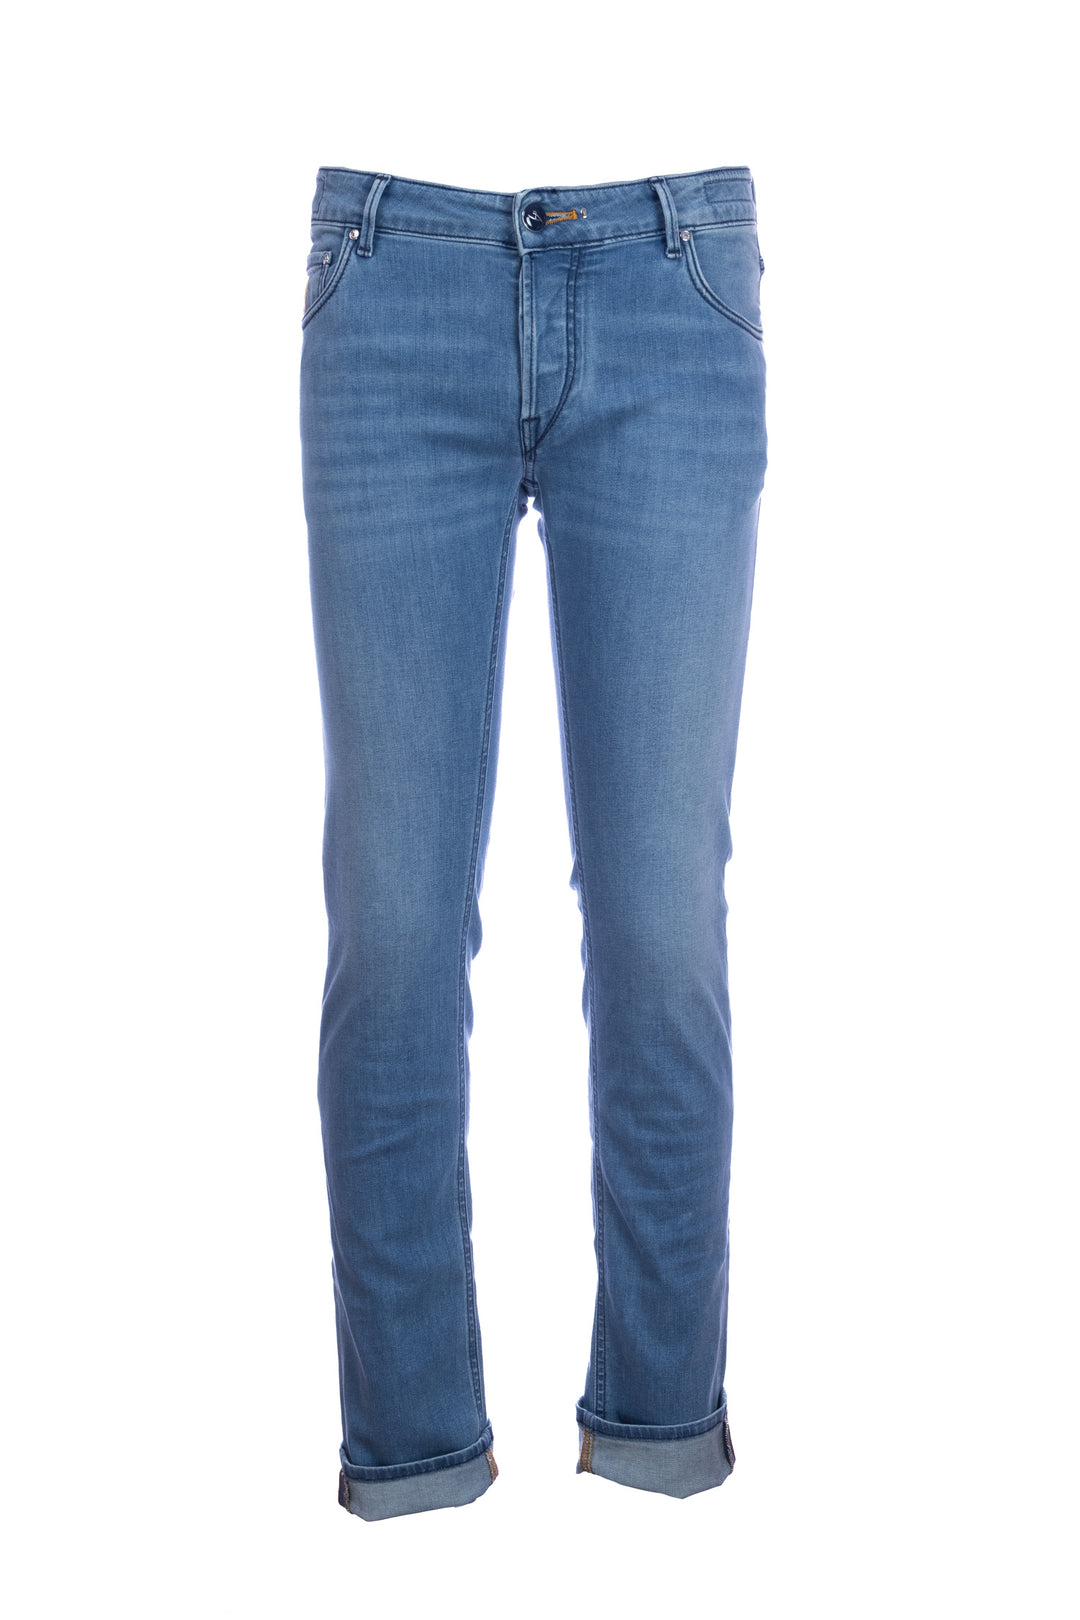 HANDPICKED Jeans 5 tasche “ORVIETO” in denim stretch lavaggio medio - Mancinelli 1954